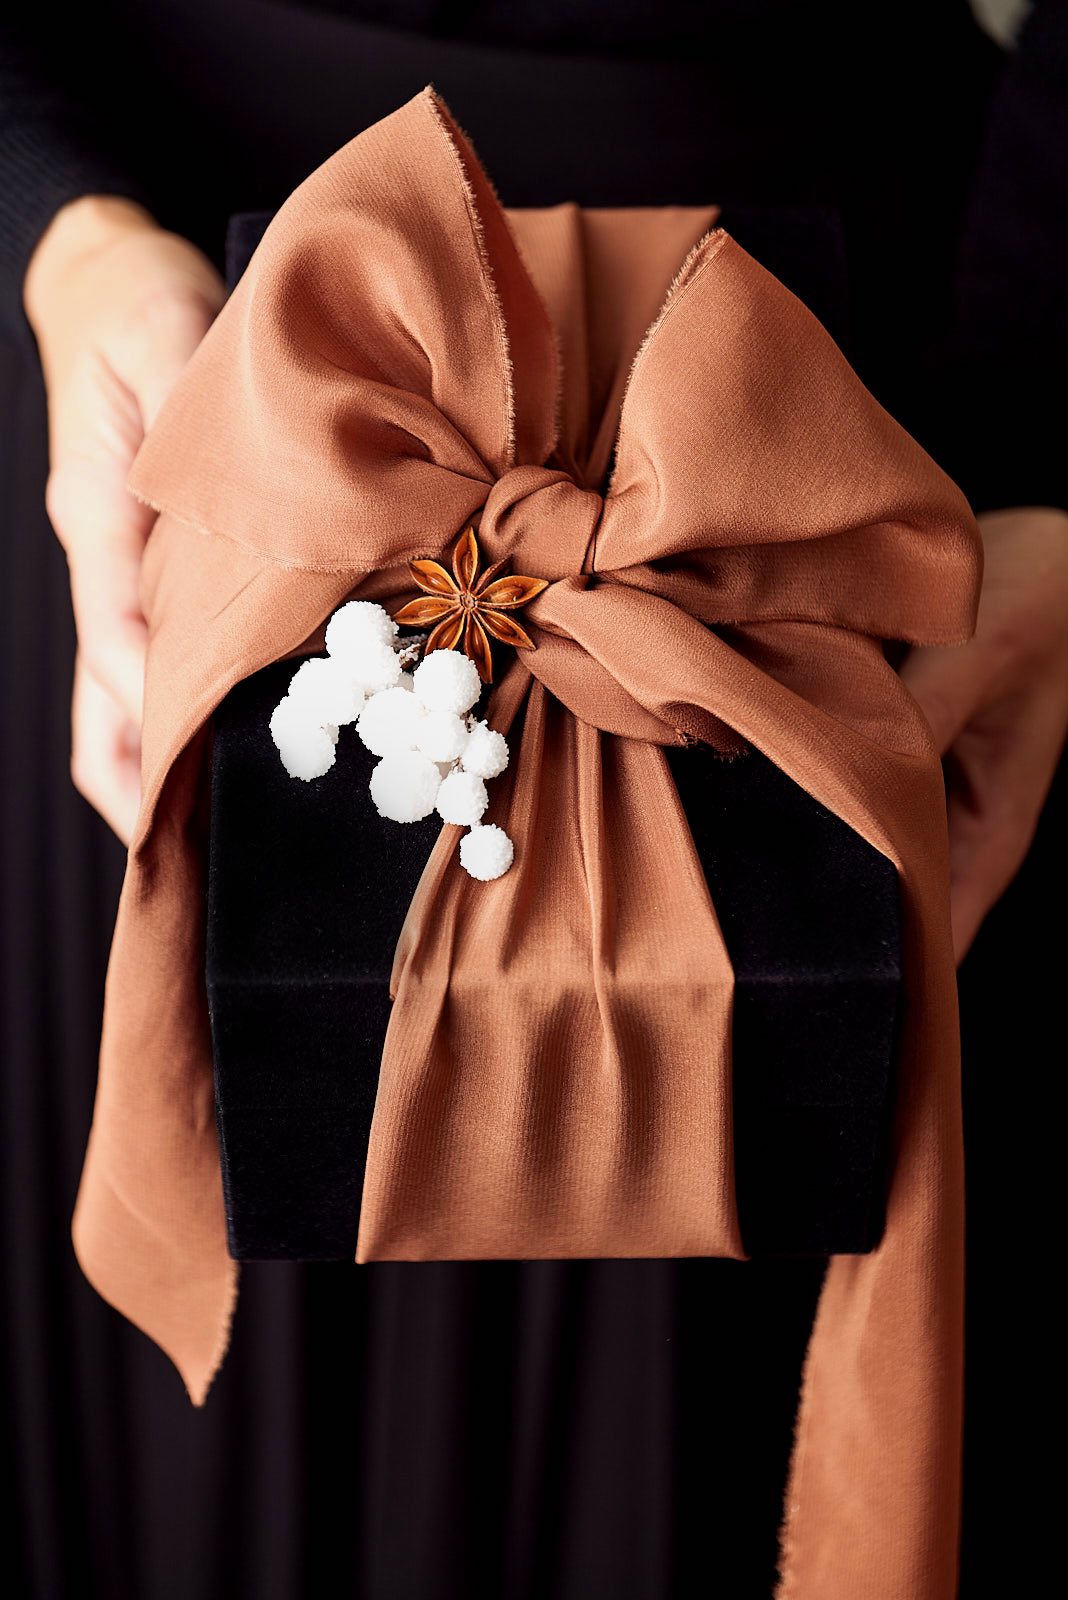 HOME Impression Originale beau cadeau avec noeud en soie offert nov2020